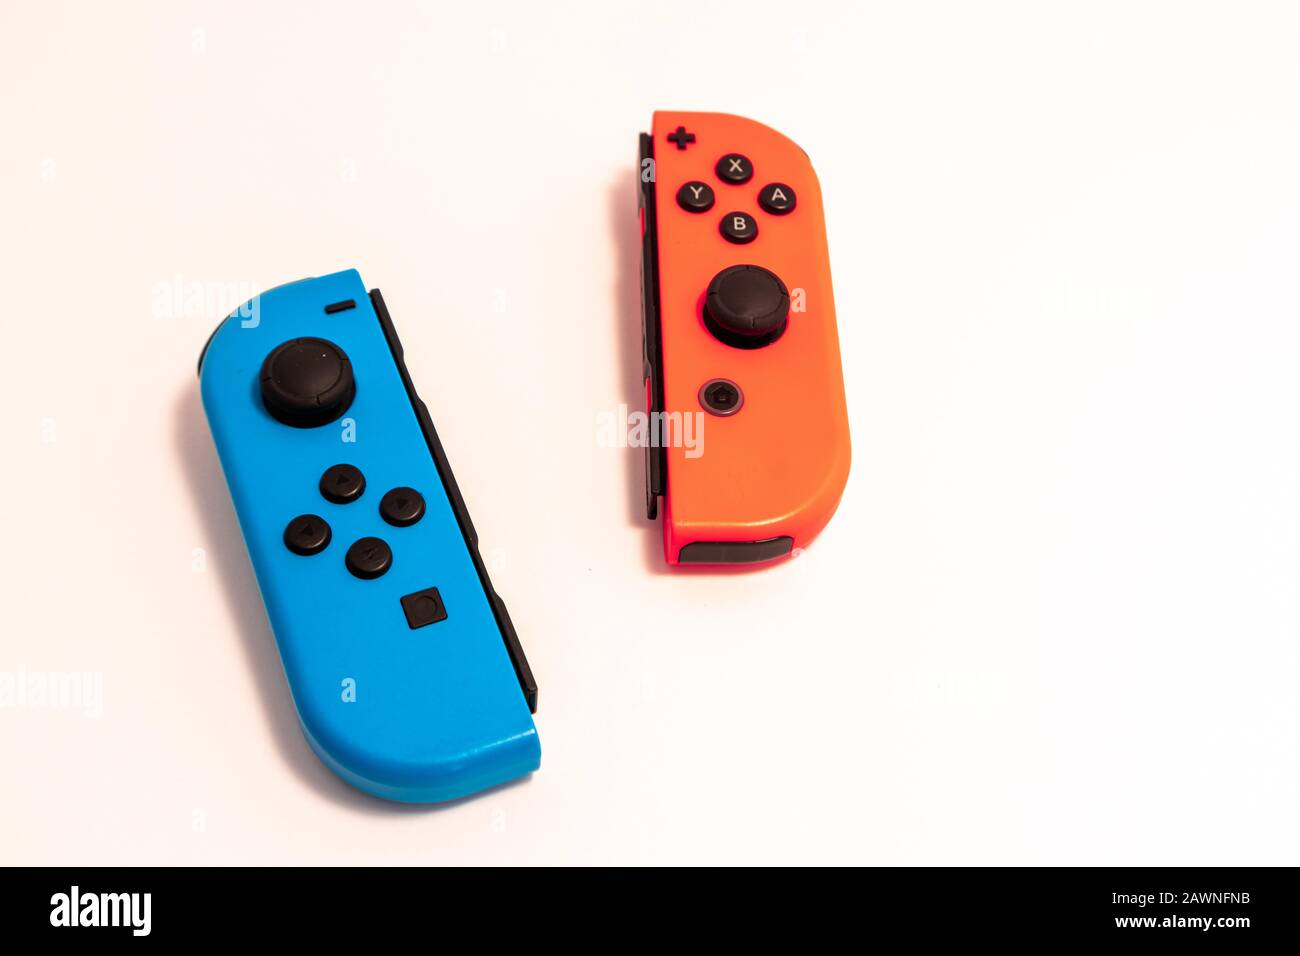 Ein Paar Nintendo Joy-Con-Controller auf solidem Weiß, die am häufigsten  kritisierte Komponente des ansonsten erfolgreichen Nintendo Switch-Videospielsyst  Stockfotografie - Alamy